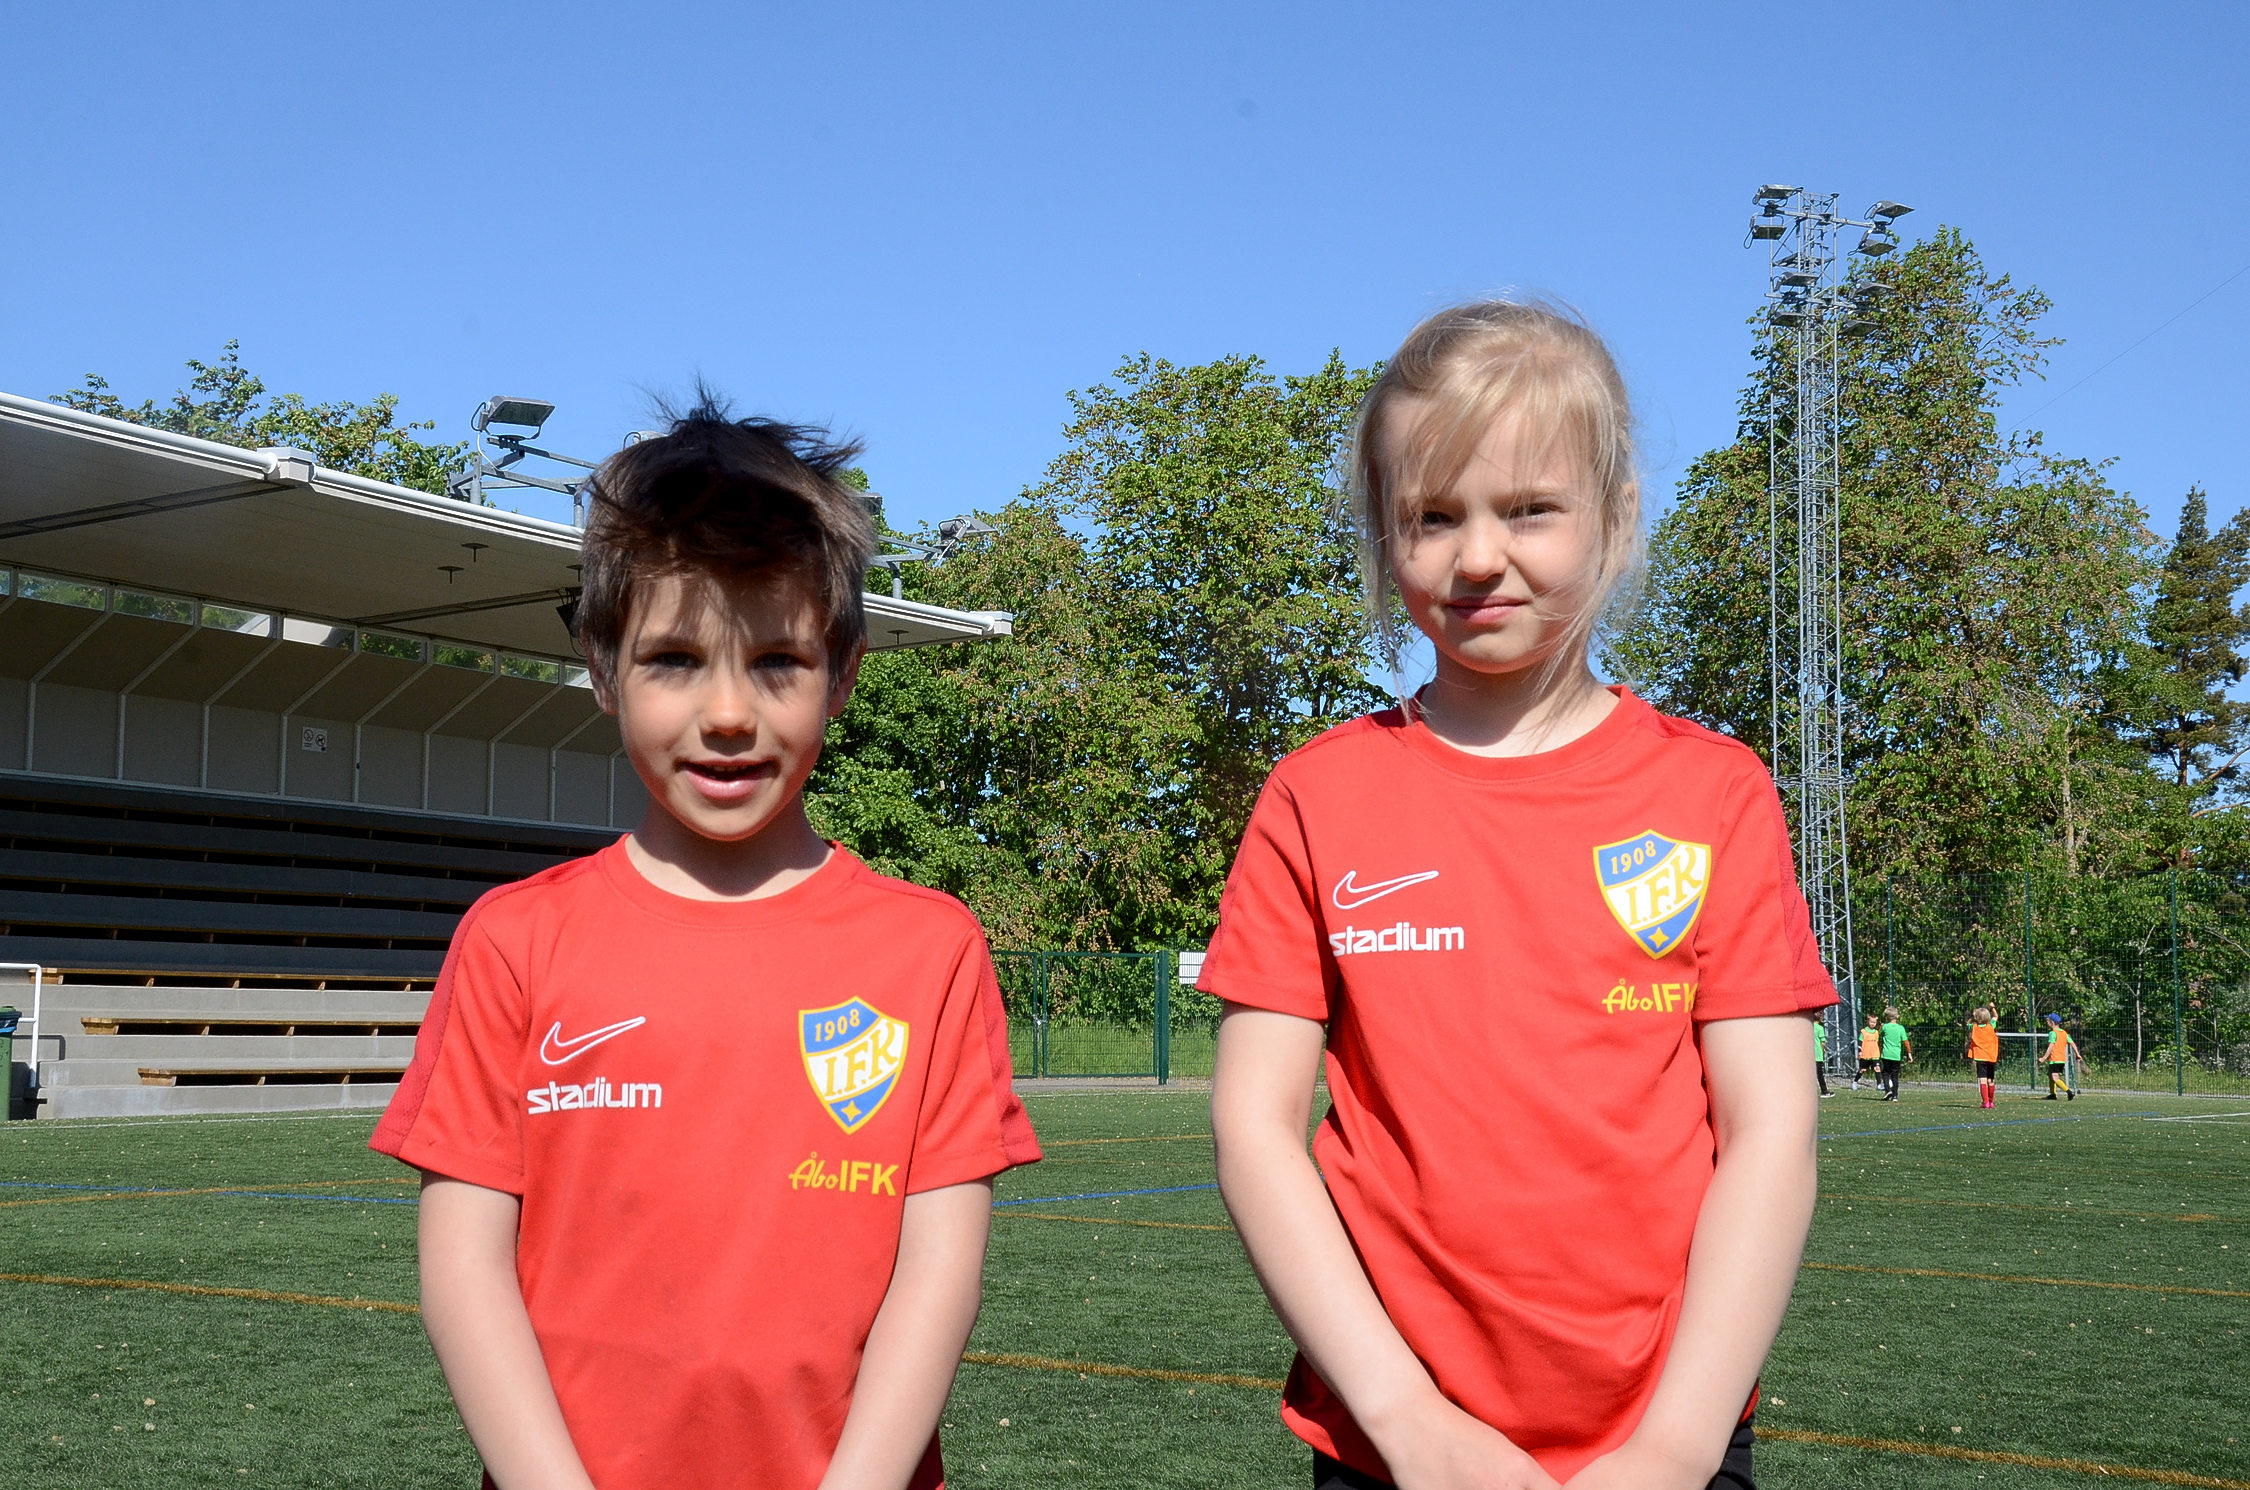 Två barn som deltar i ett idrottsläger står på en fotbollsplan.